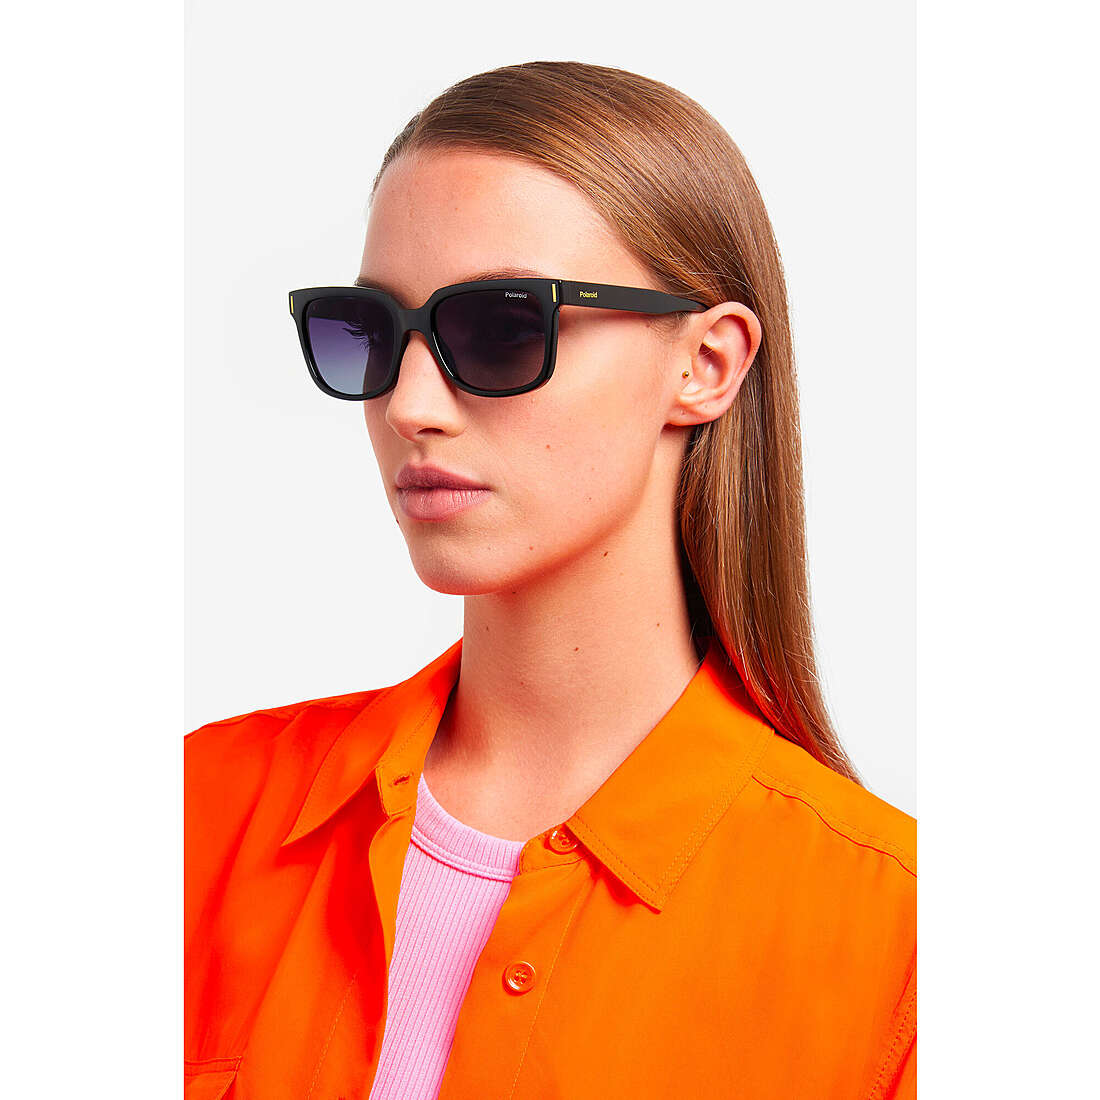 Polaroid occhiali da sole Cool unisex 20568880754WJ indosso